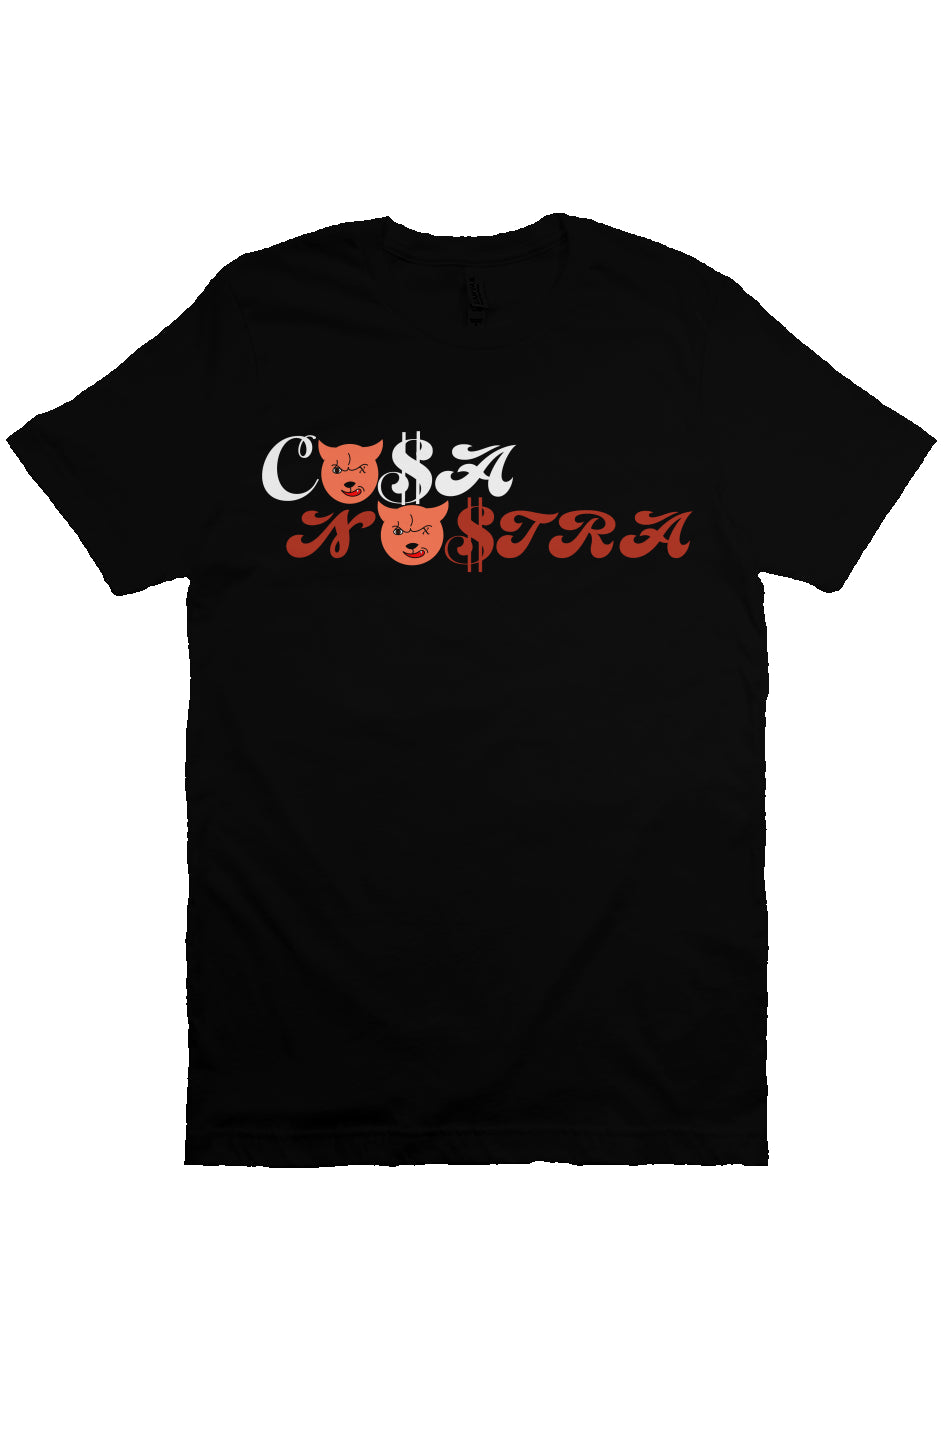 Cosa Nostra Devil T Shirt